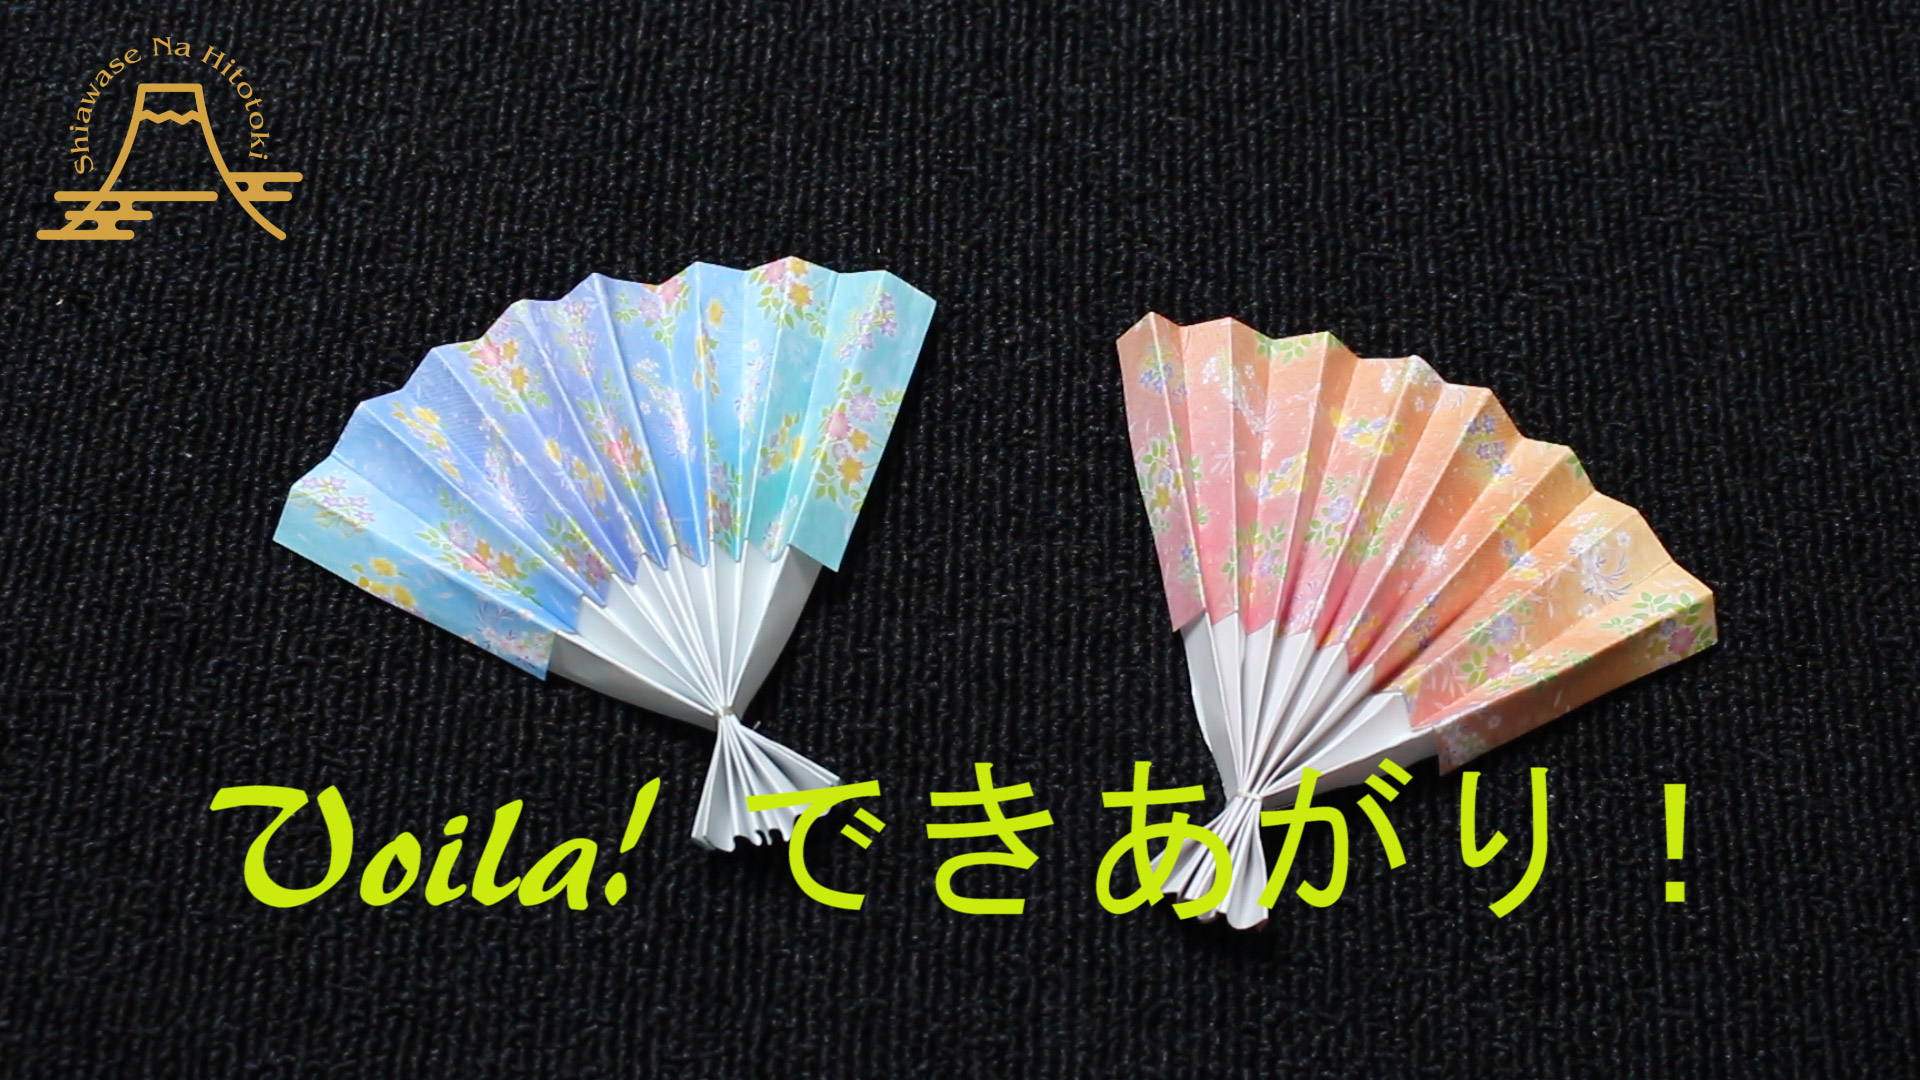 簡単 折り紙 扇 せんすの折り方 日本の伝統品を折り紙で作ろう 折り紙の折り方 幸せなひと時